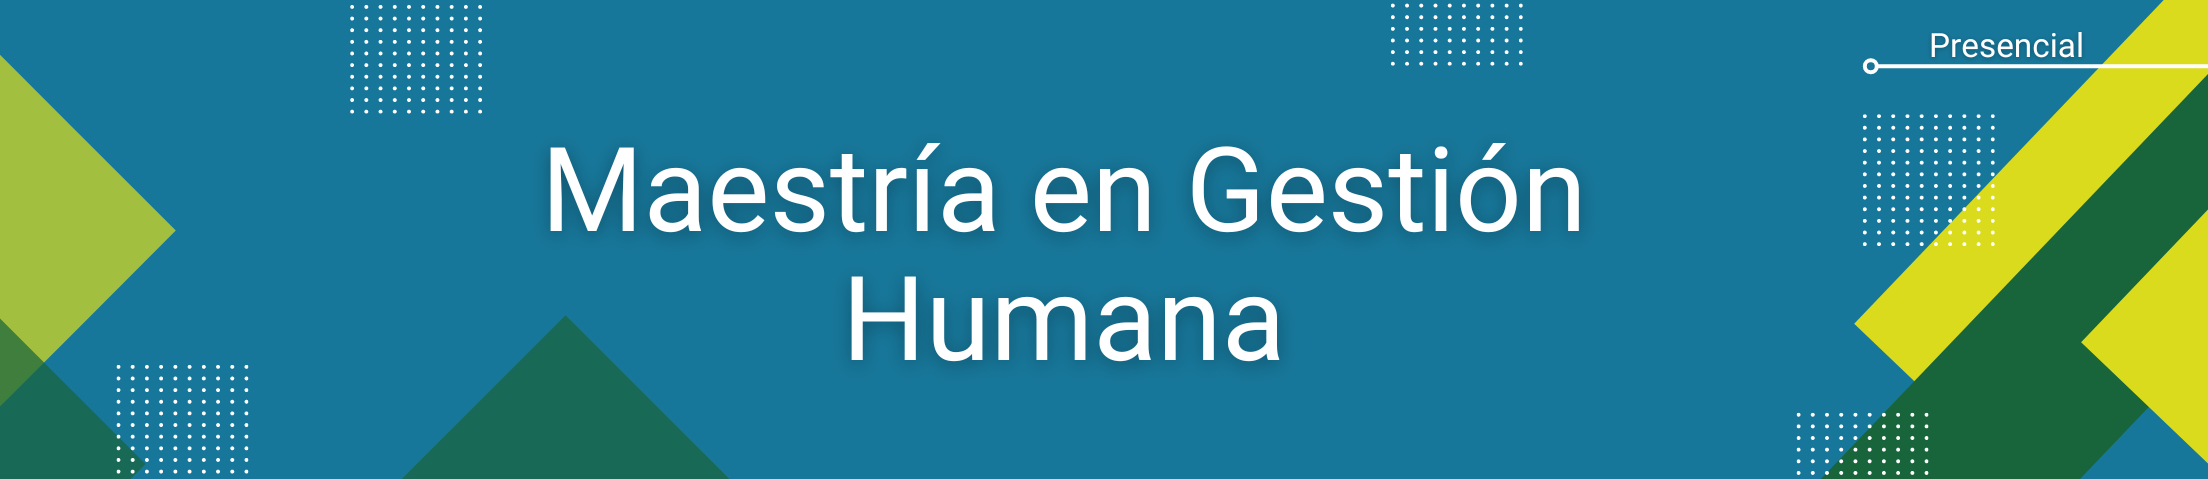 Banner general del programa de Maestría en Gesitón Humana. Contiene la información: Modalidad Presencial.